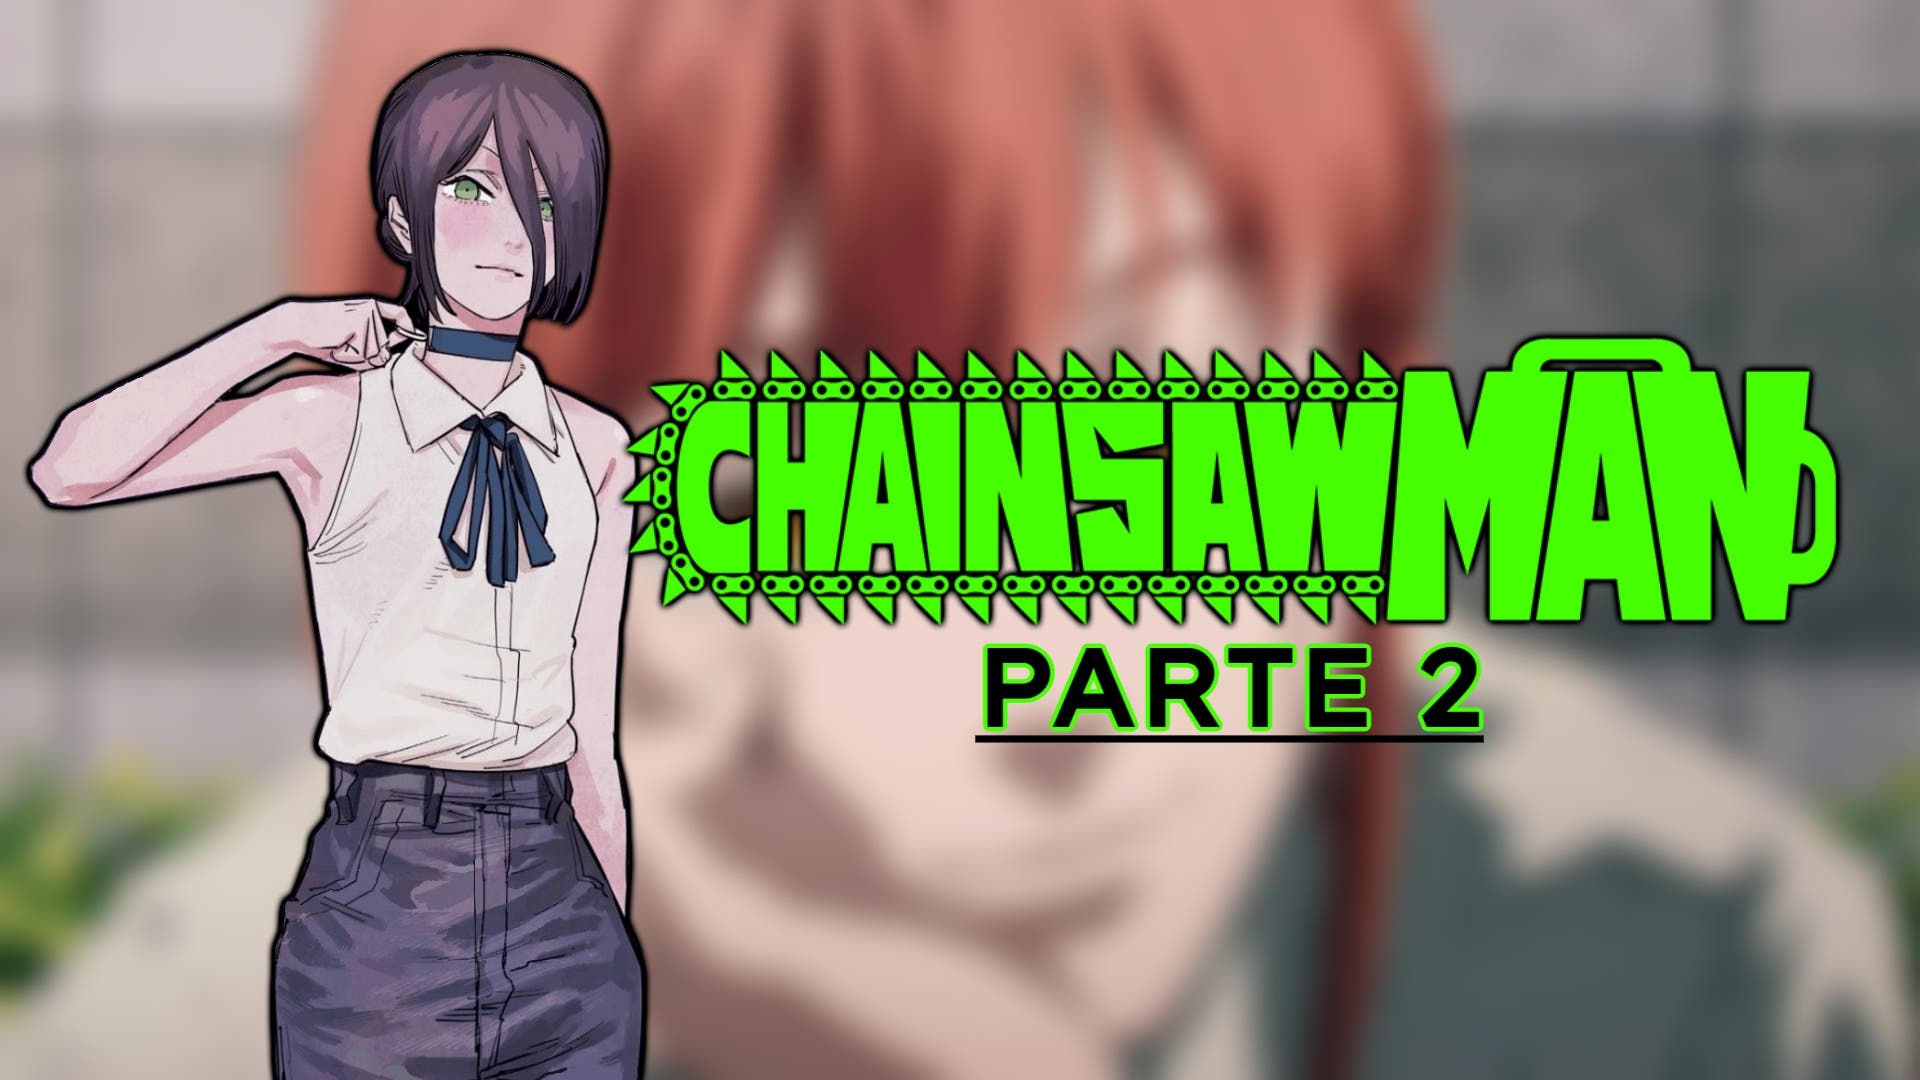 Cuántos capítulos podría tener el anime de Chainsaw Man